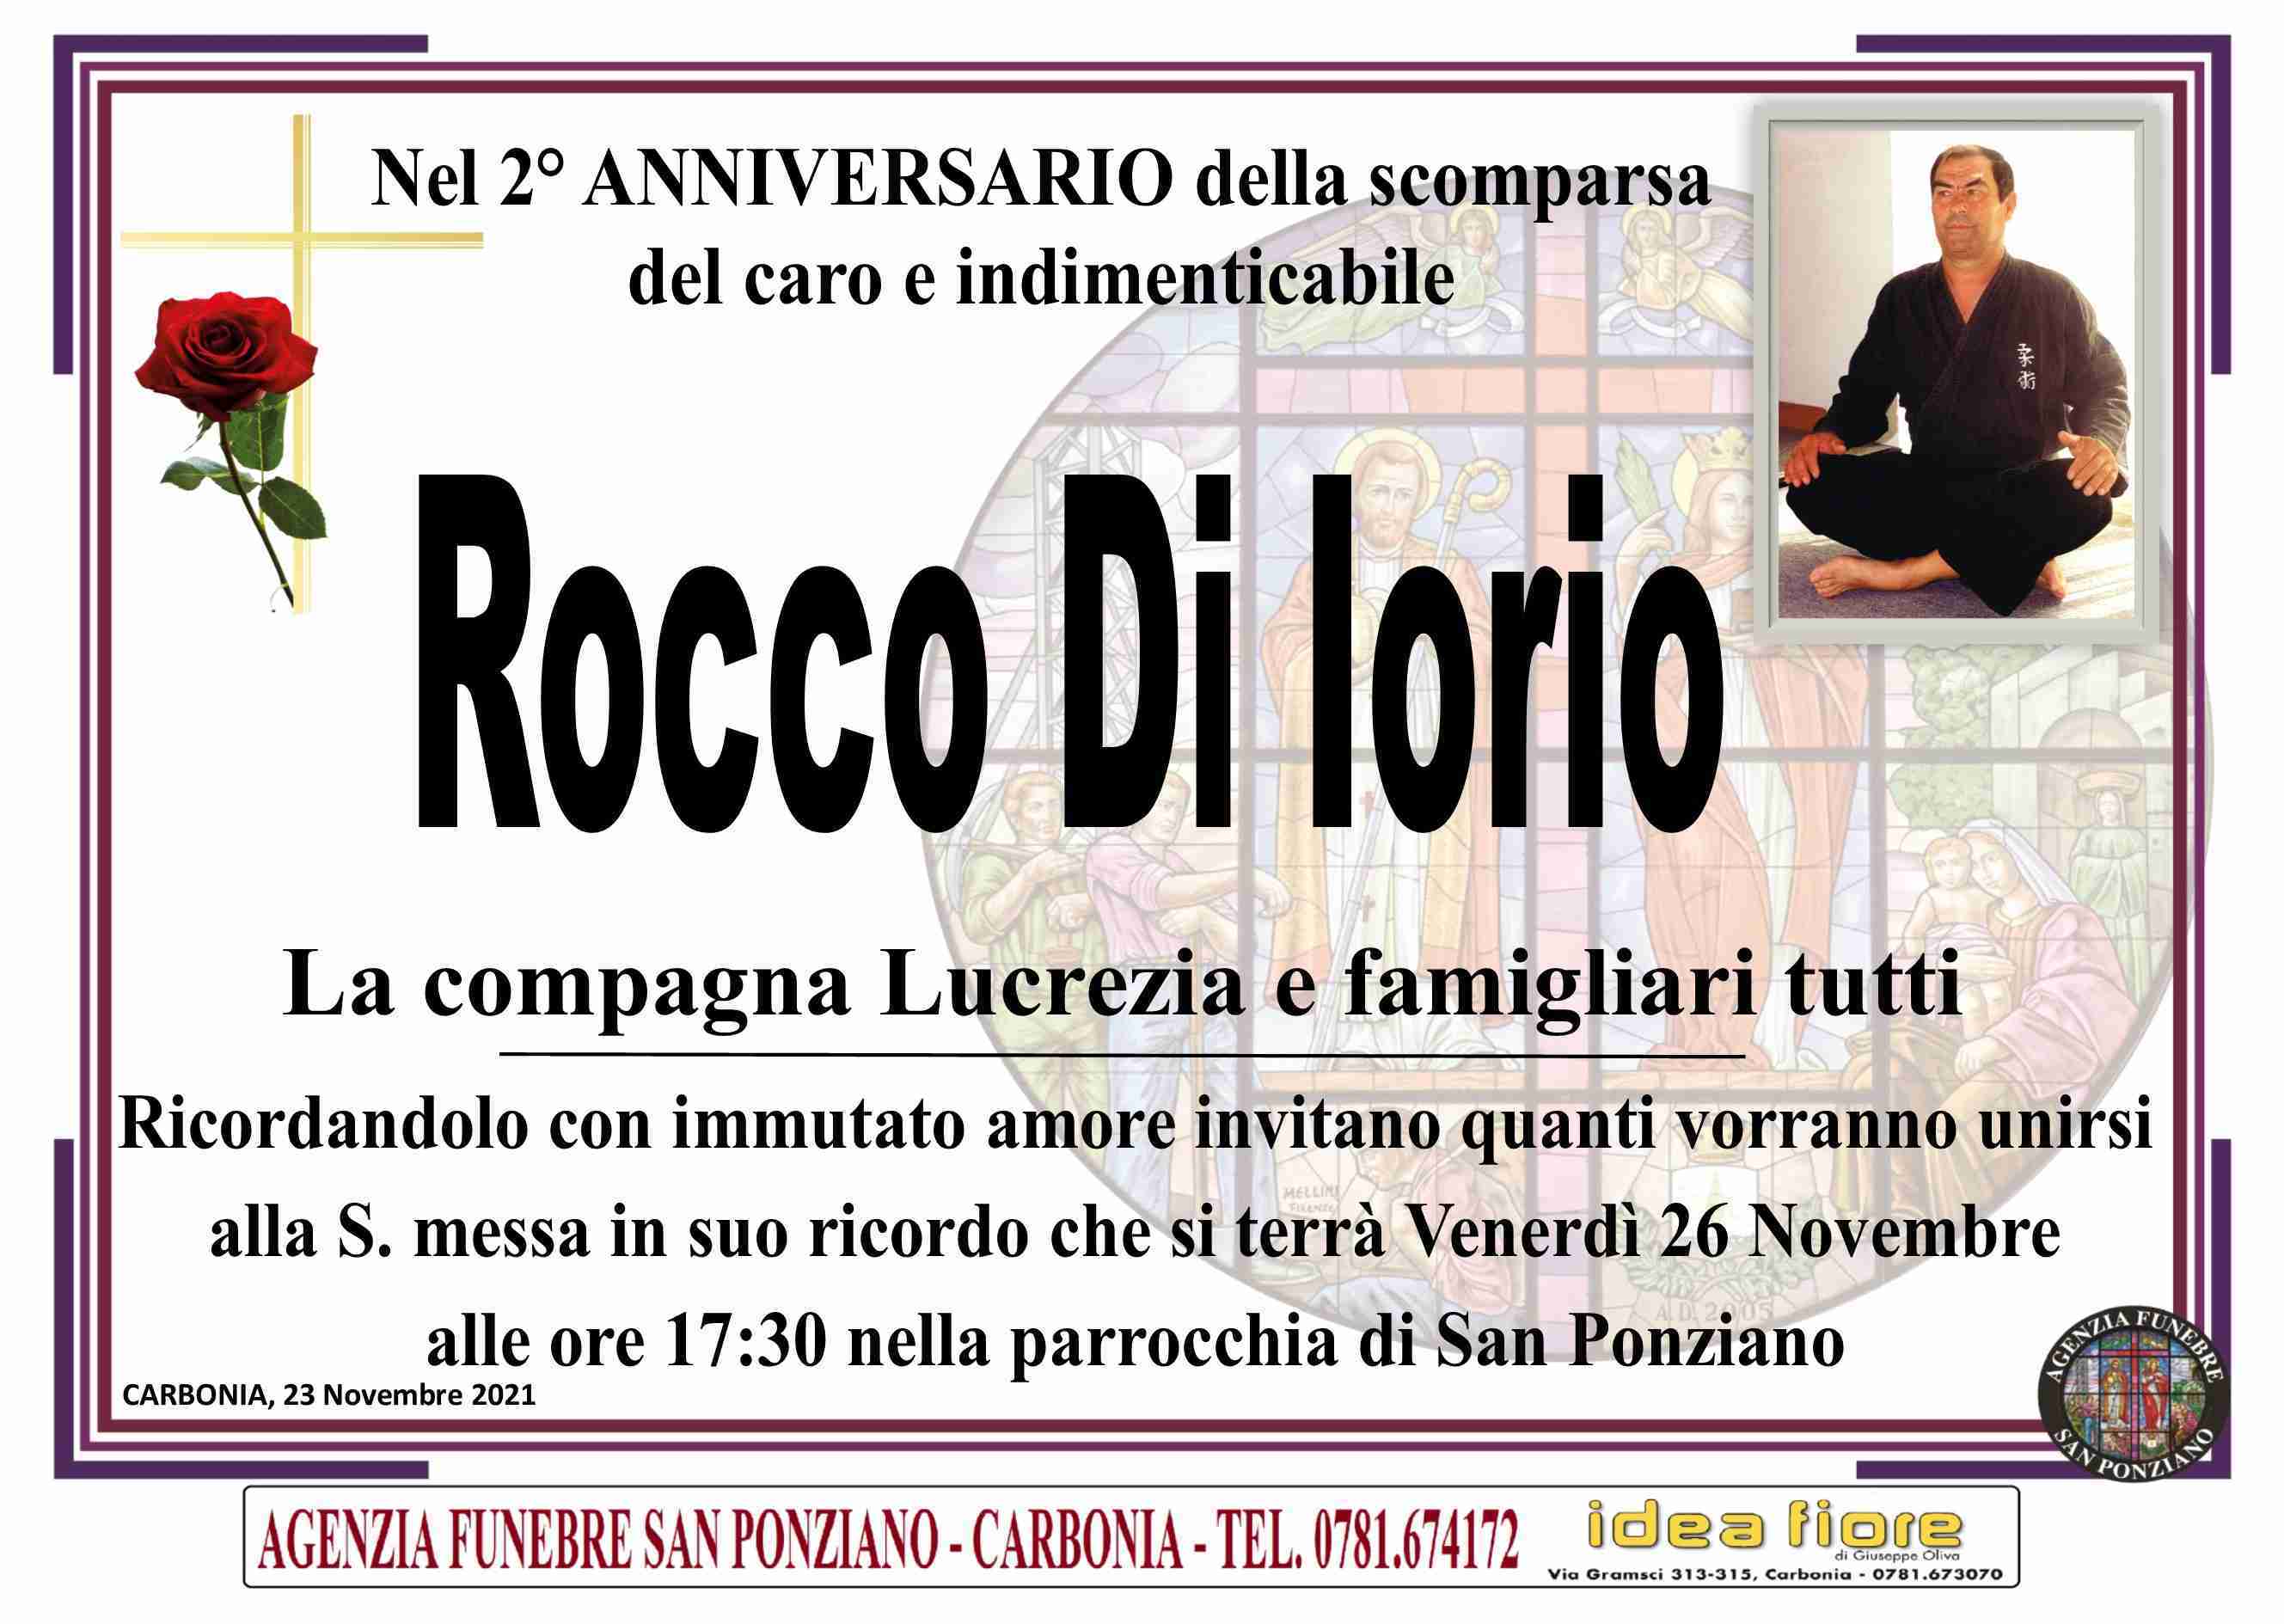 Rocco Di Iorio